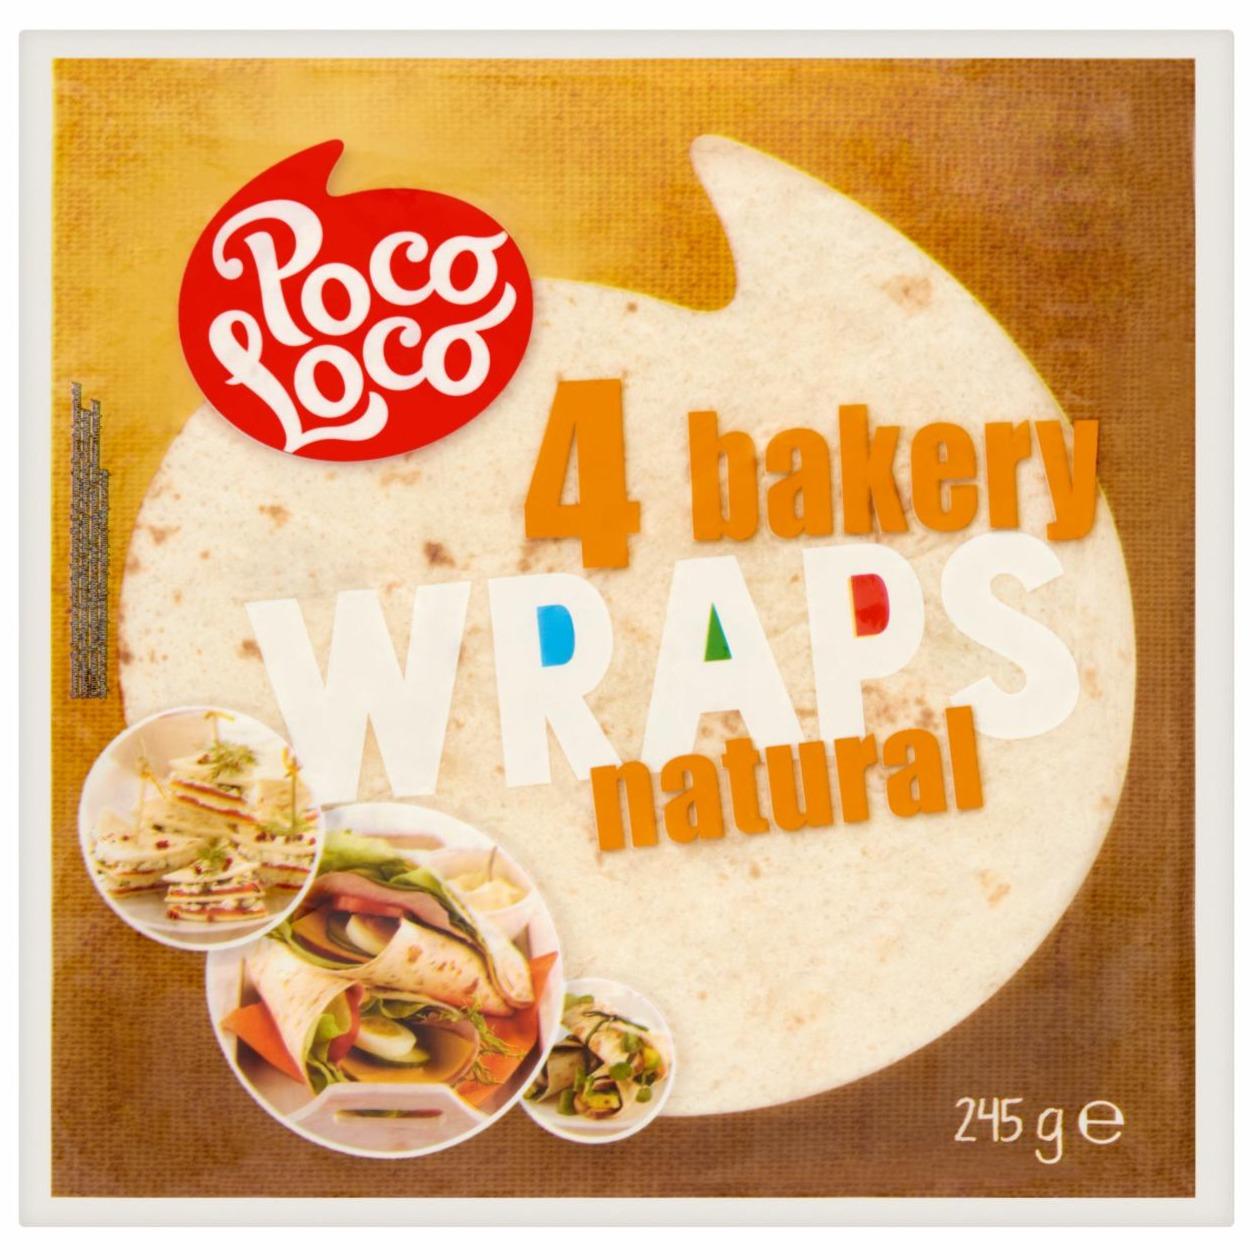 Zdjęcia - 4 bakery wraps original Poco Loco